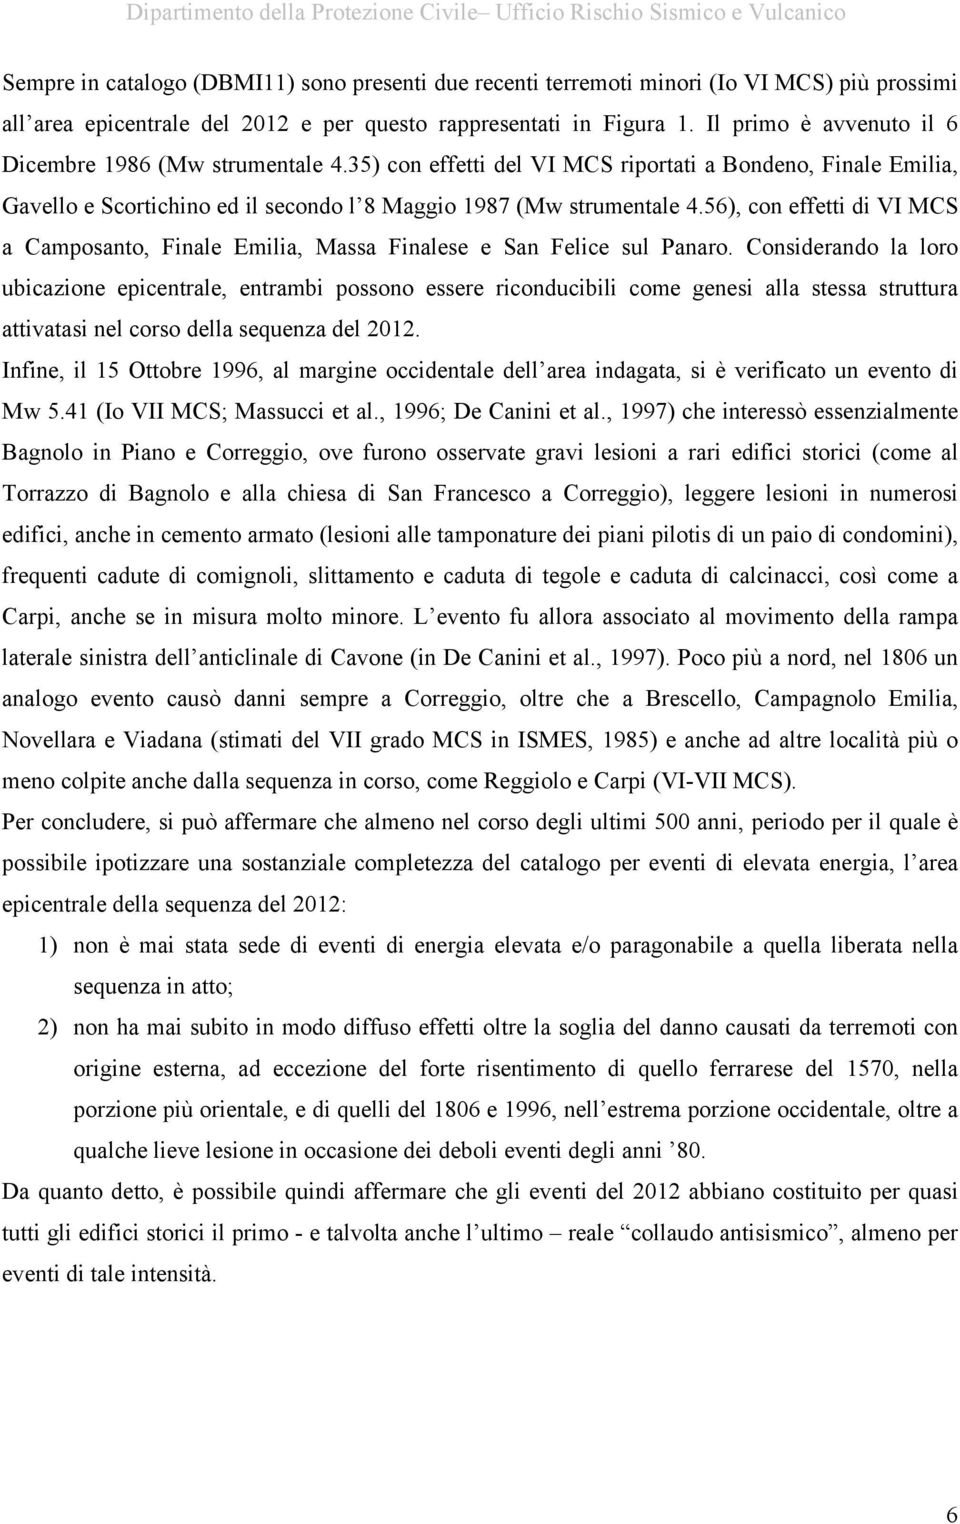 56), con effetti di VI MCS a Camposanto, Finale Emilia, Massa Finalese e San Felice sul Panaro.